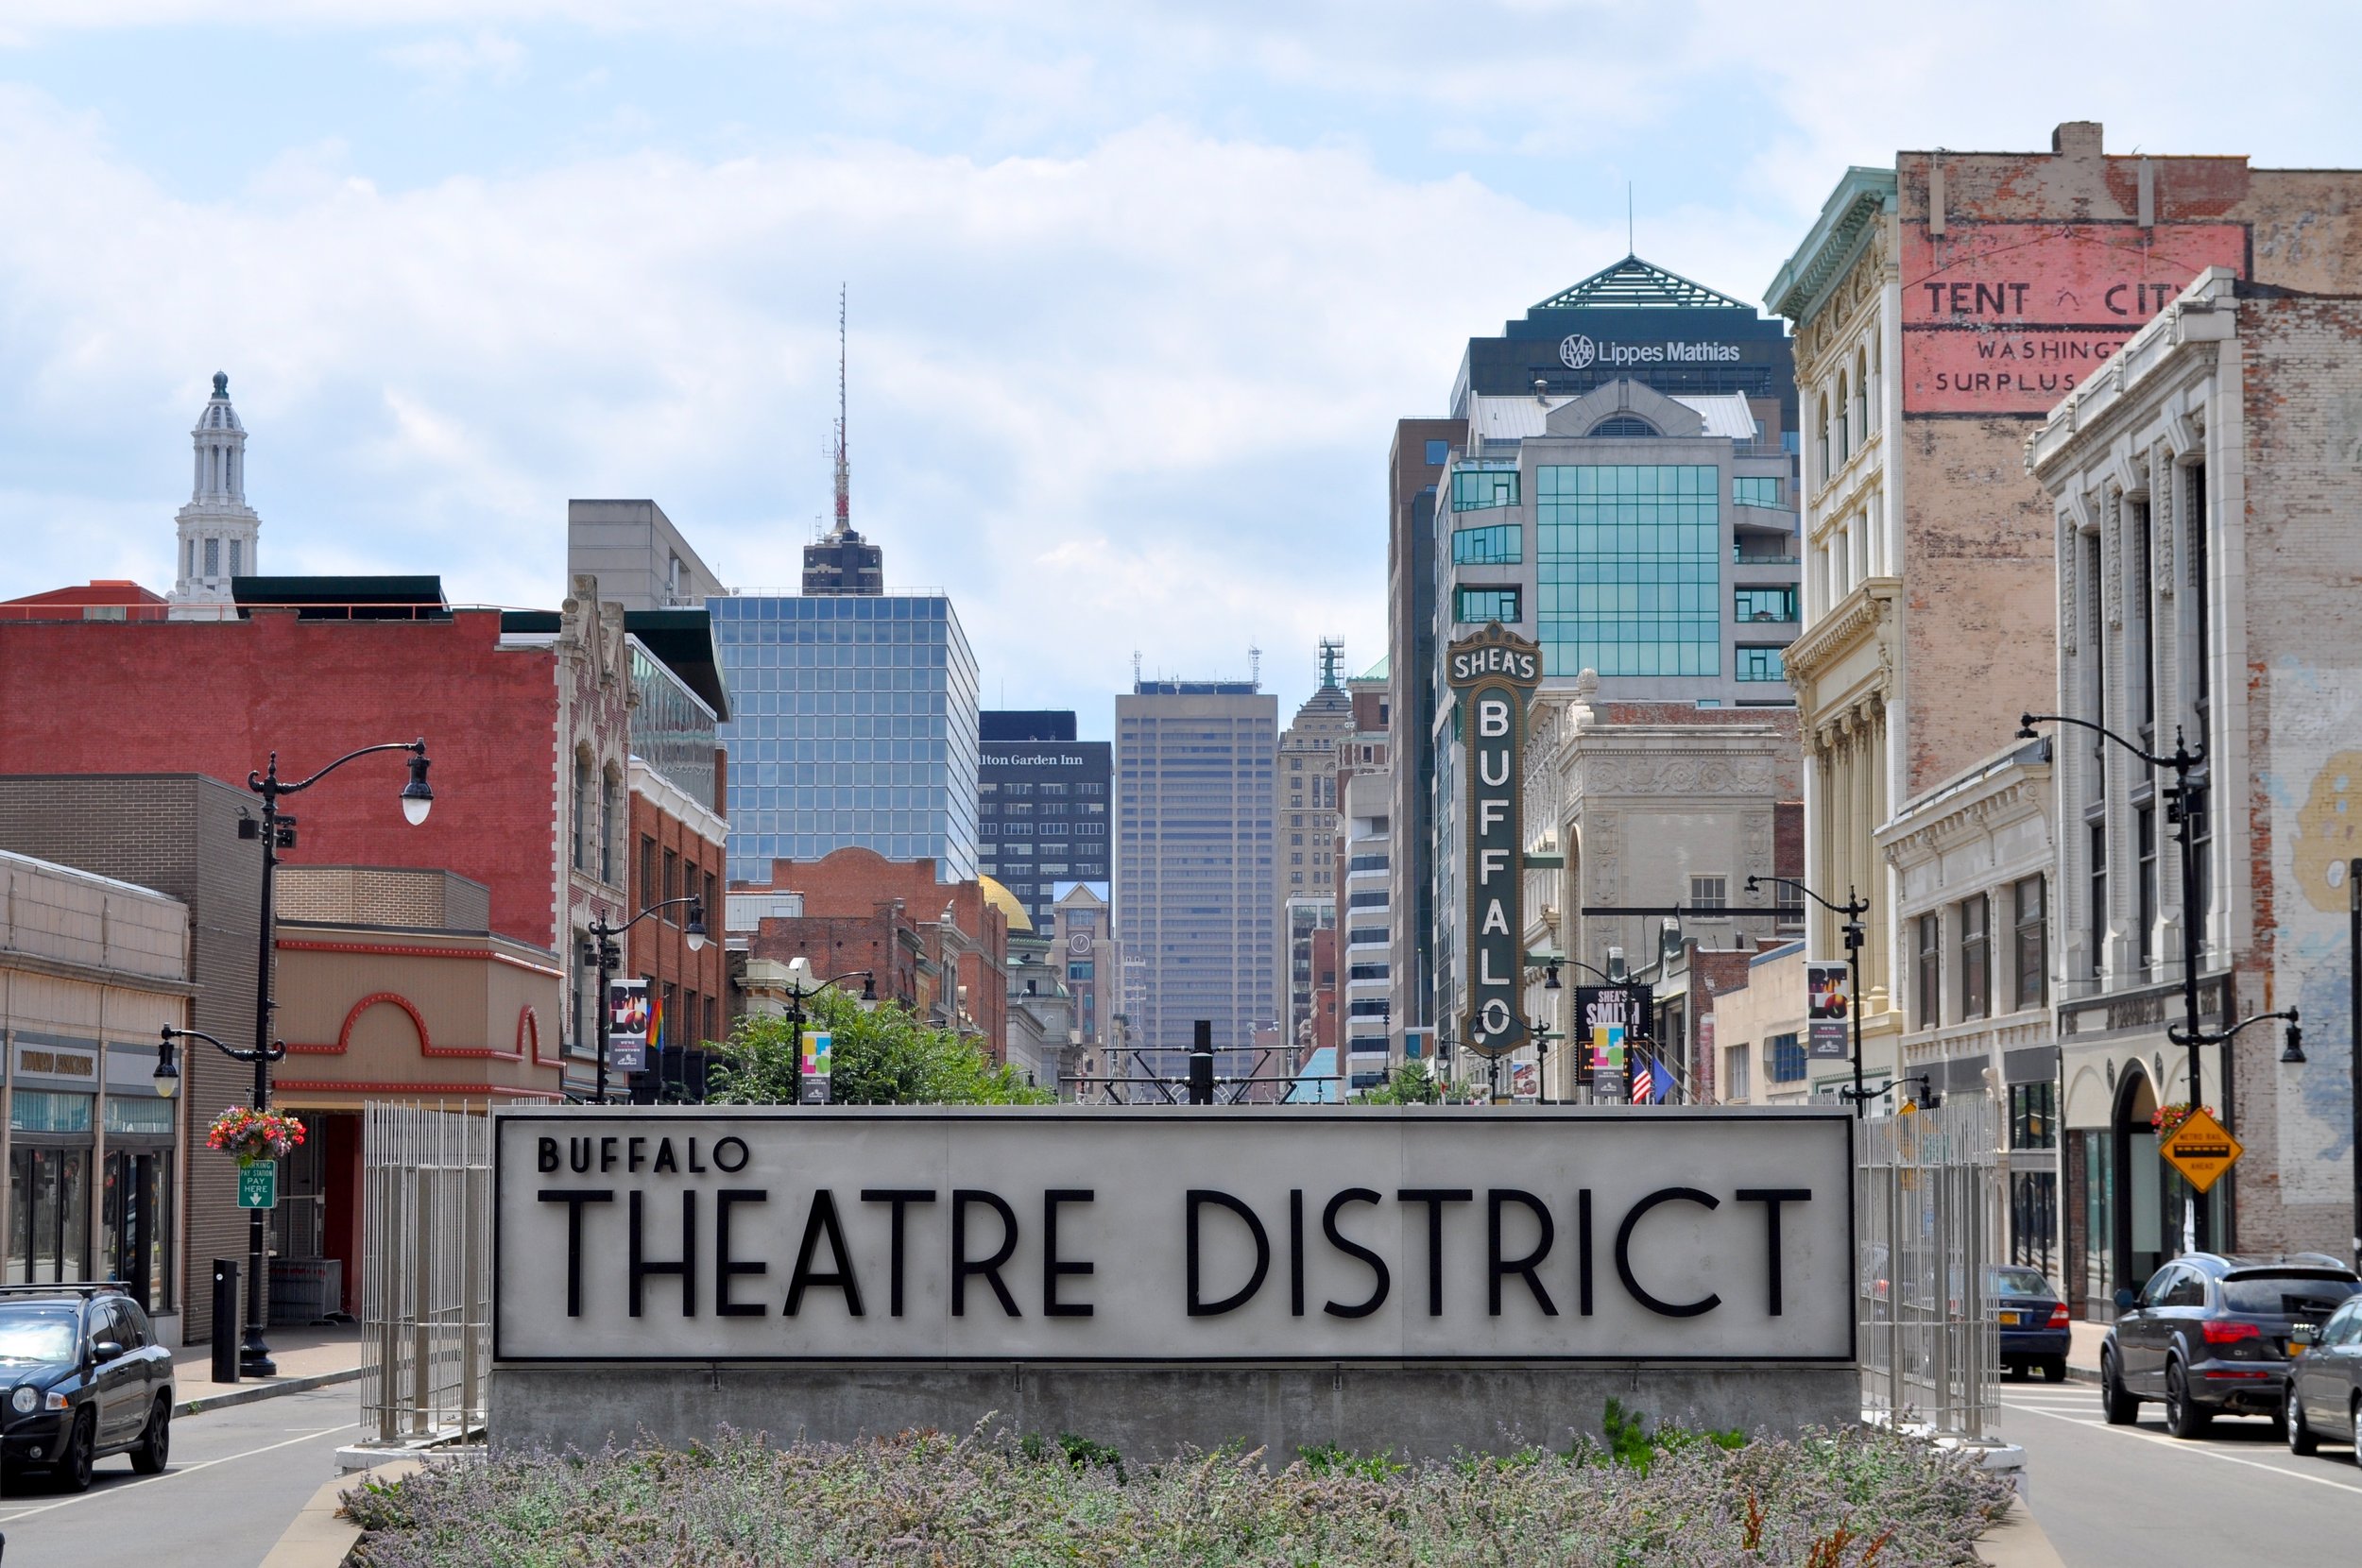 2018 Theatre District - Buffalo NY T.JPG